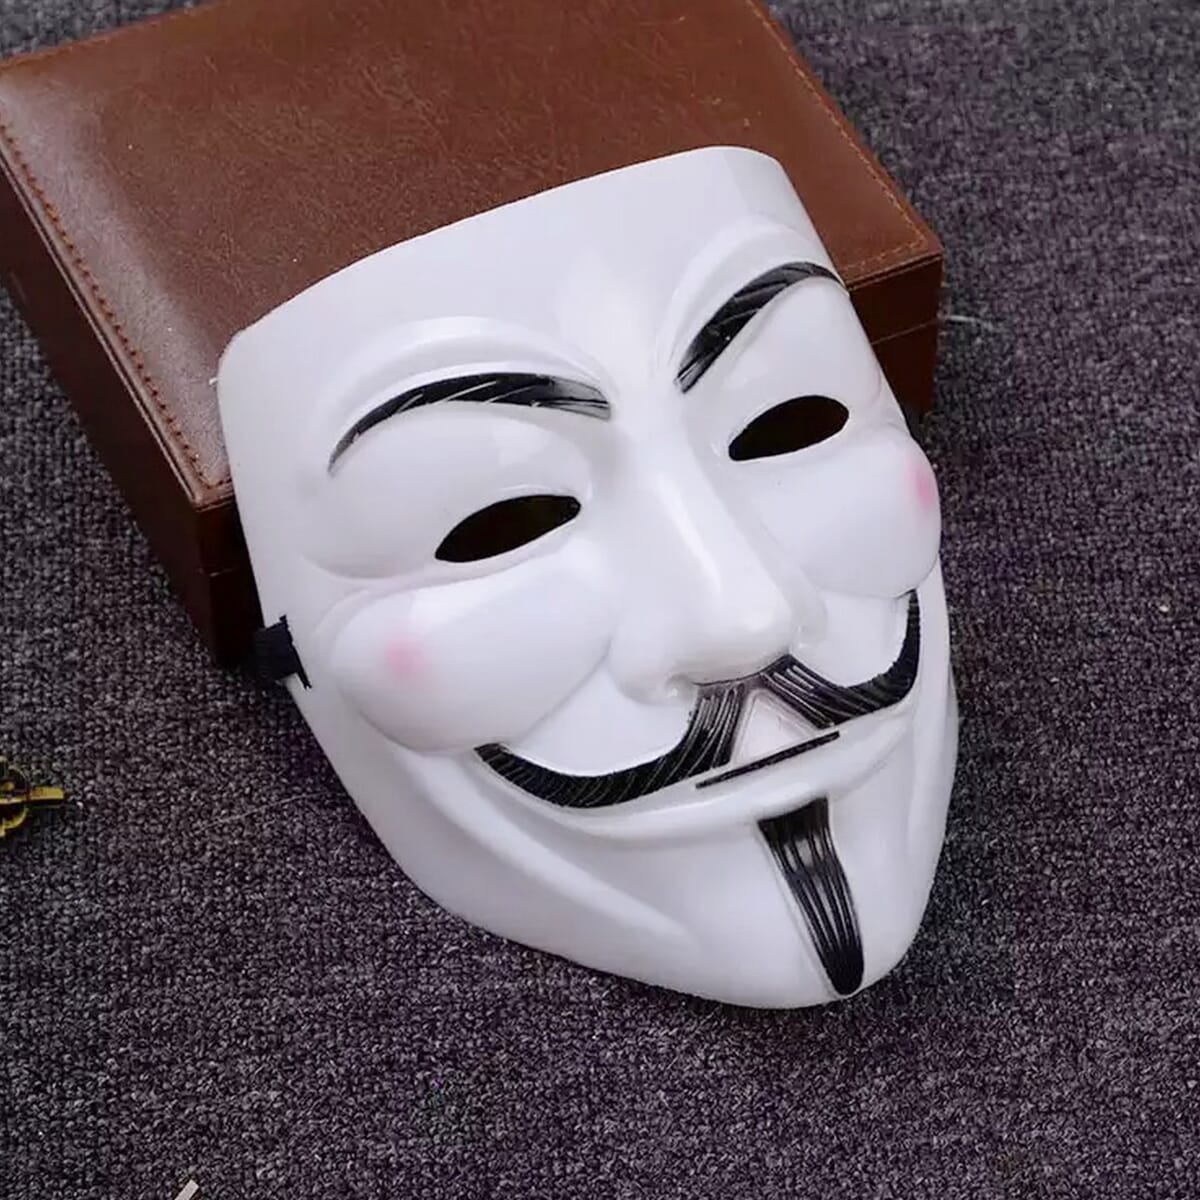 anonymity mask